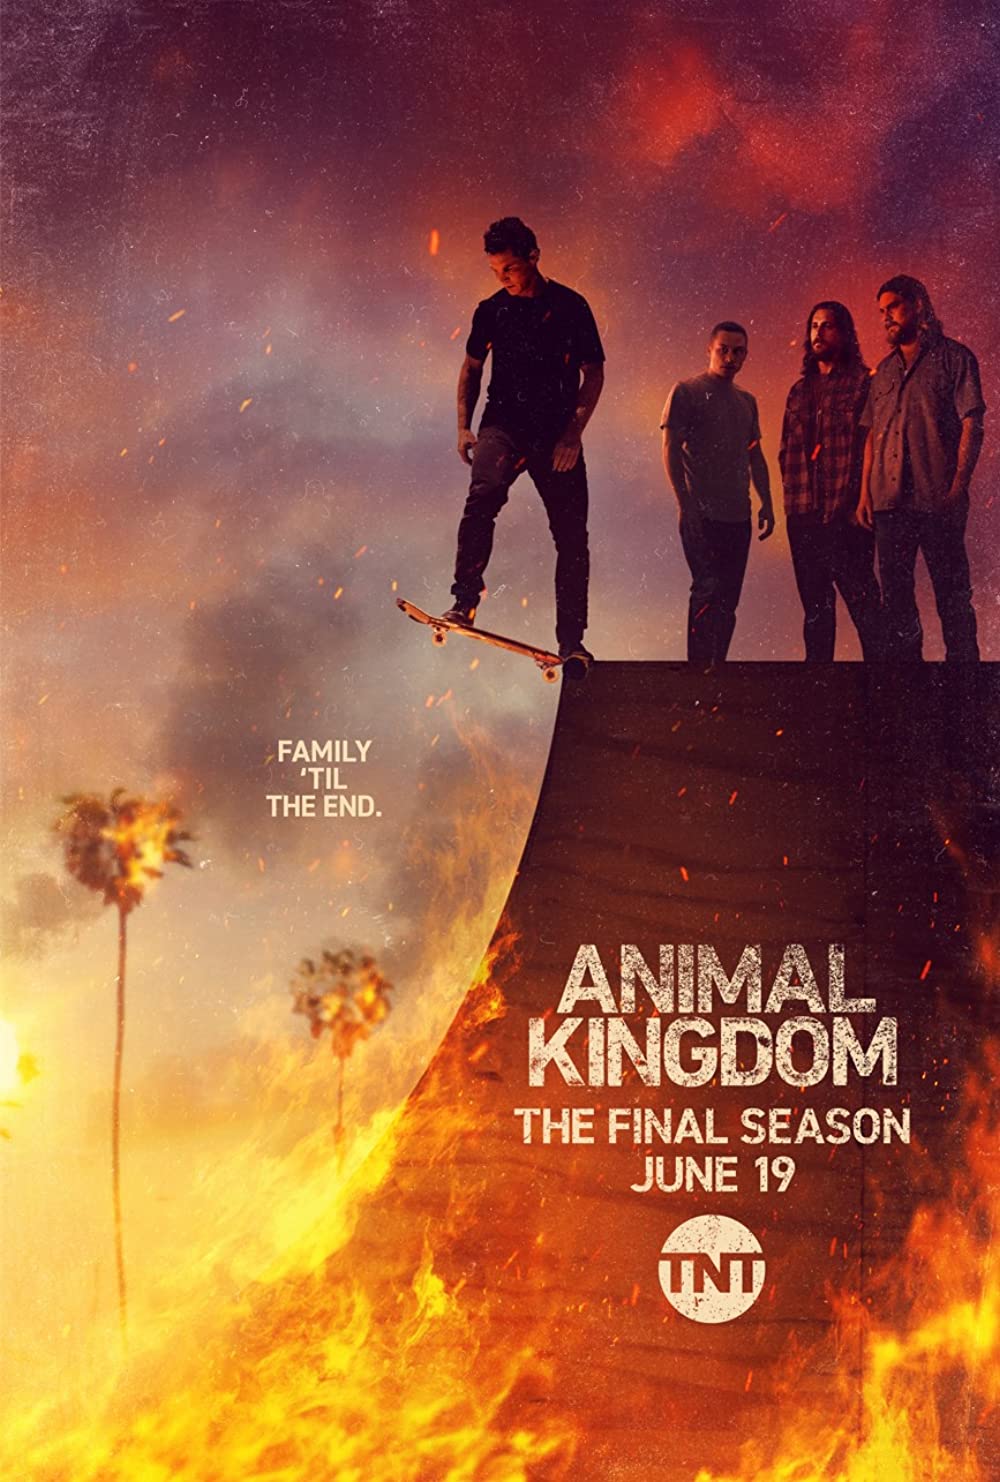 ดูหนังออนไลน์ฟรี Animal Kingdom Season 1 EP.2 แอนนิเมิล คิงด้อม ซีซั่น 1 ตอนที่ 2 (ซับไทย)